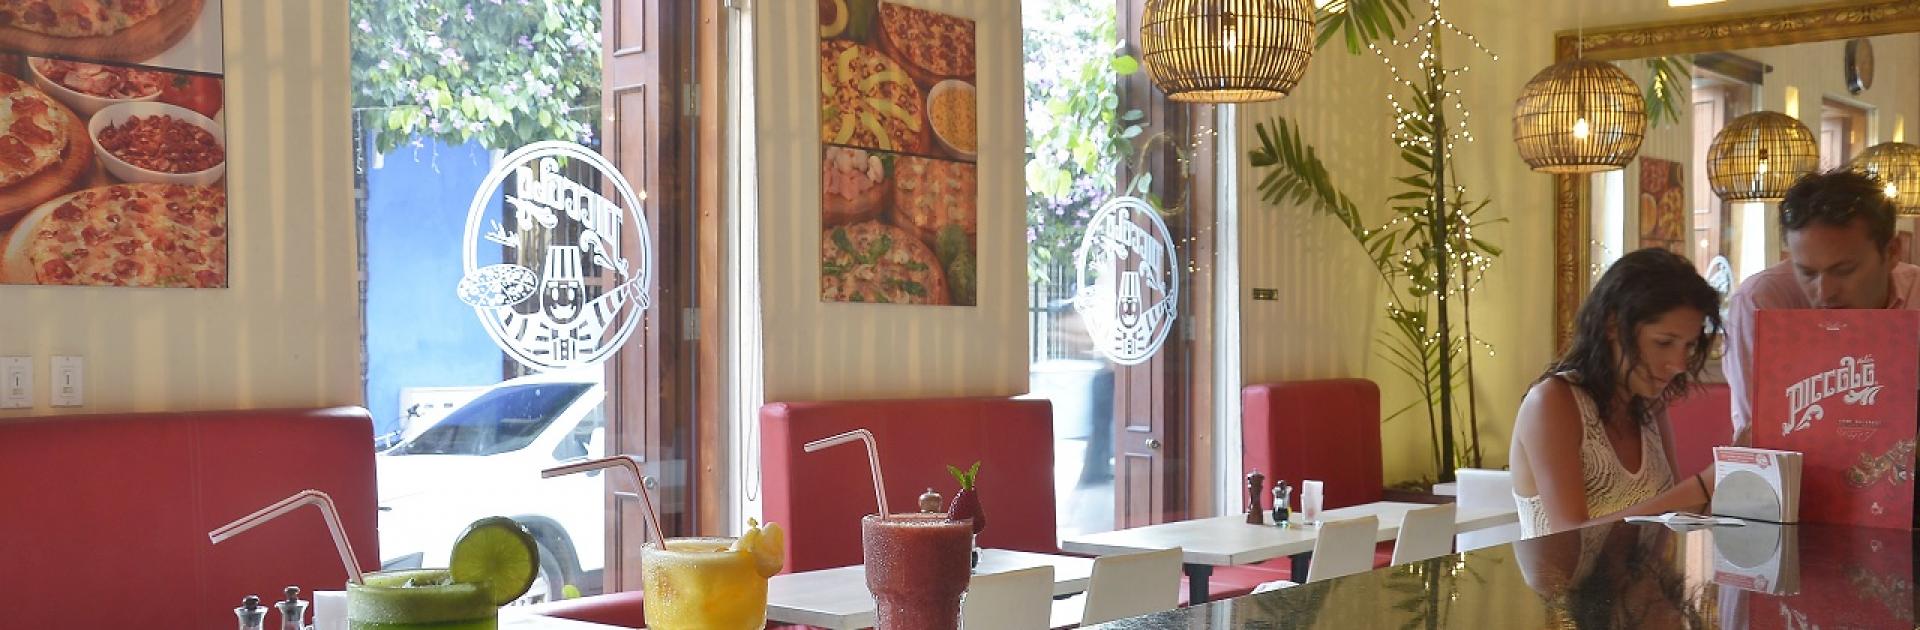 Pizzas Piccolo, participante de Dónde Restaurant Week 2019 en Cartagena de Indias